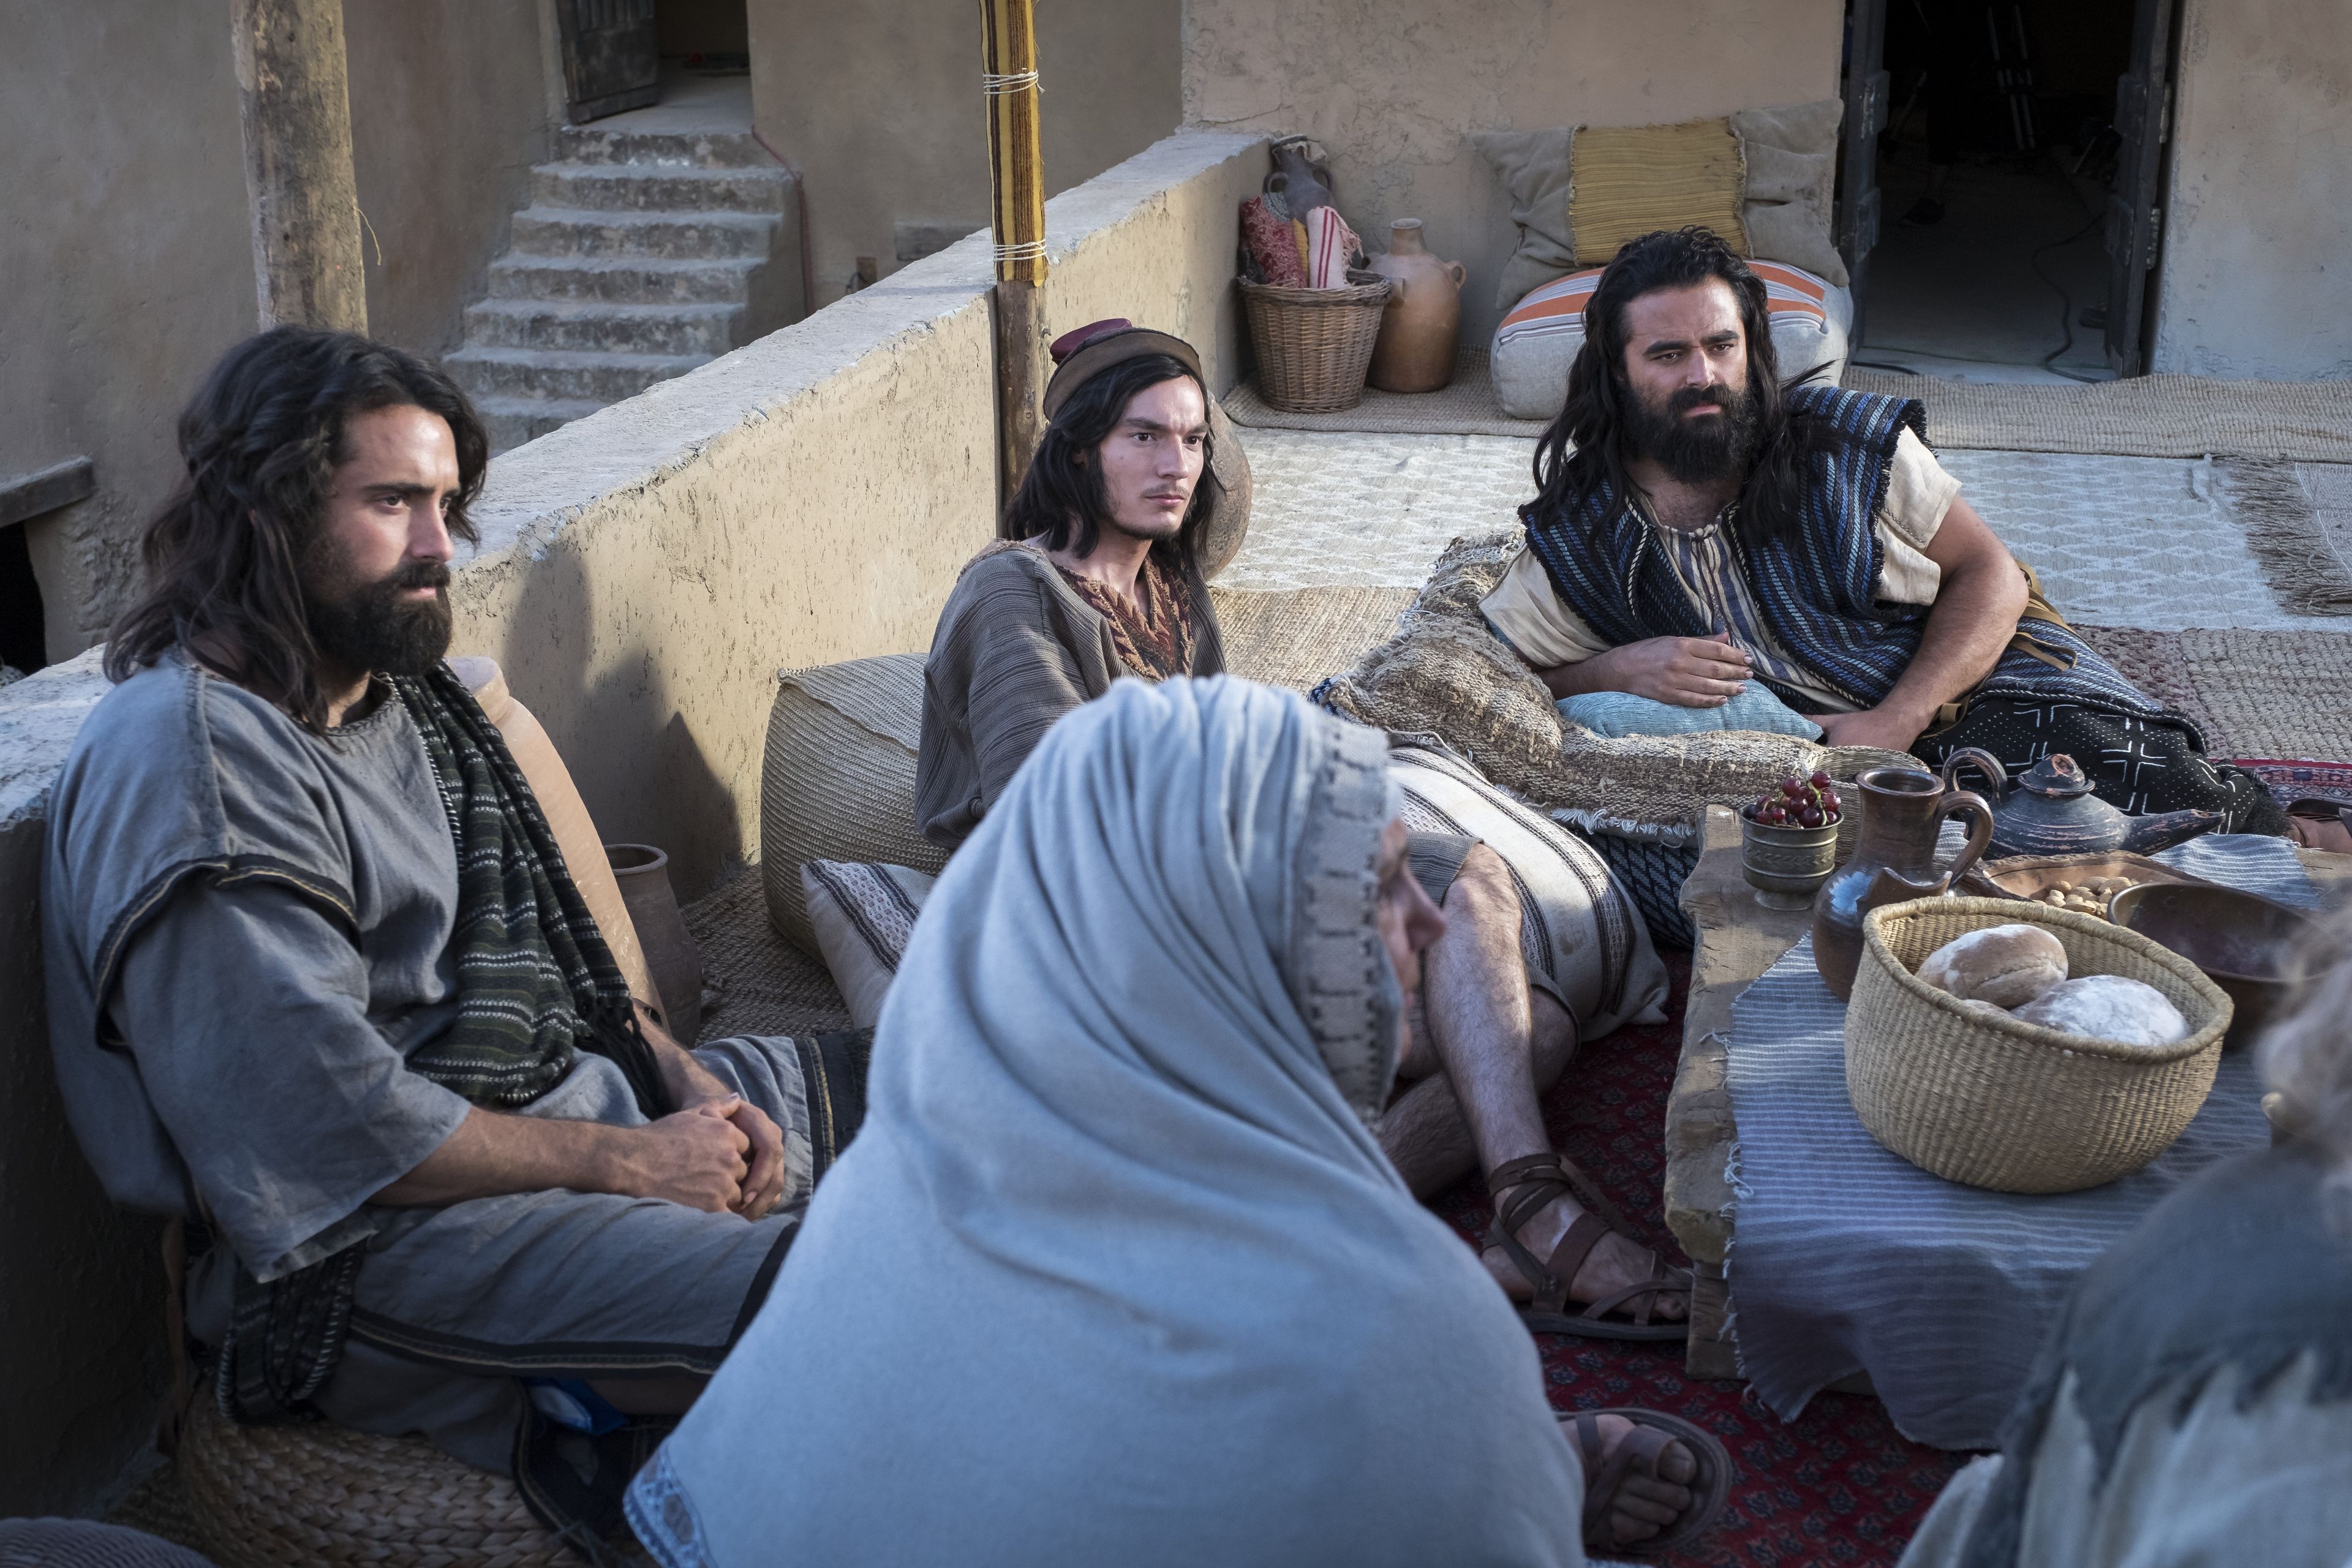 La famiglia di Lehi parla nella propria casa a Gerusalemme.